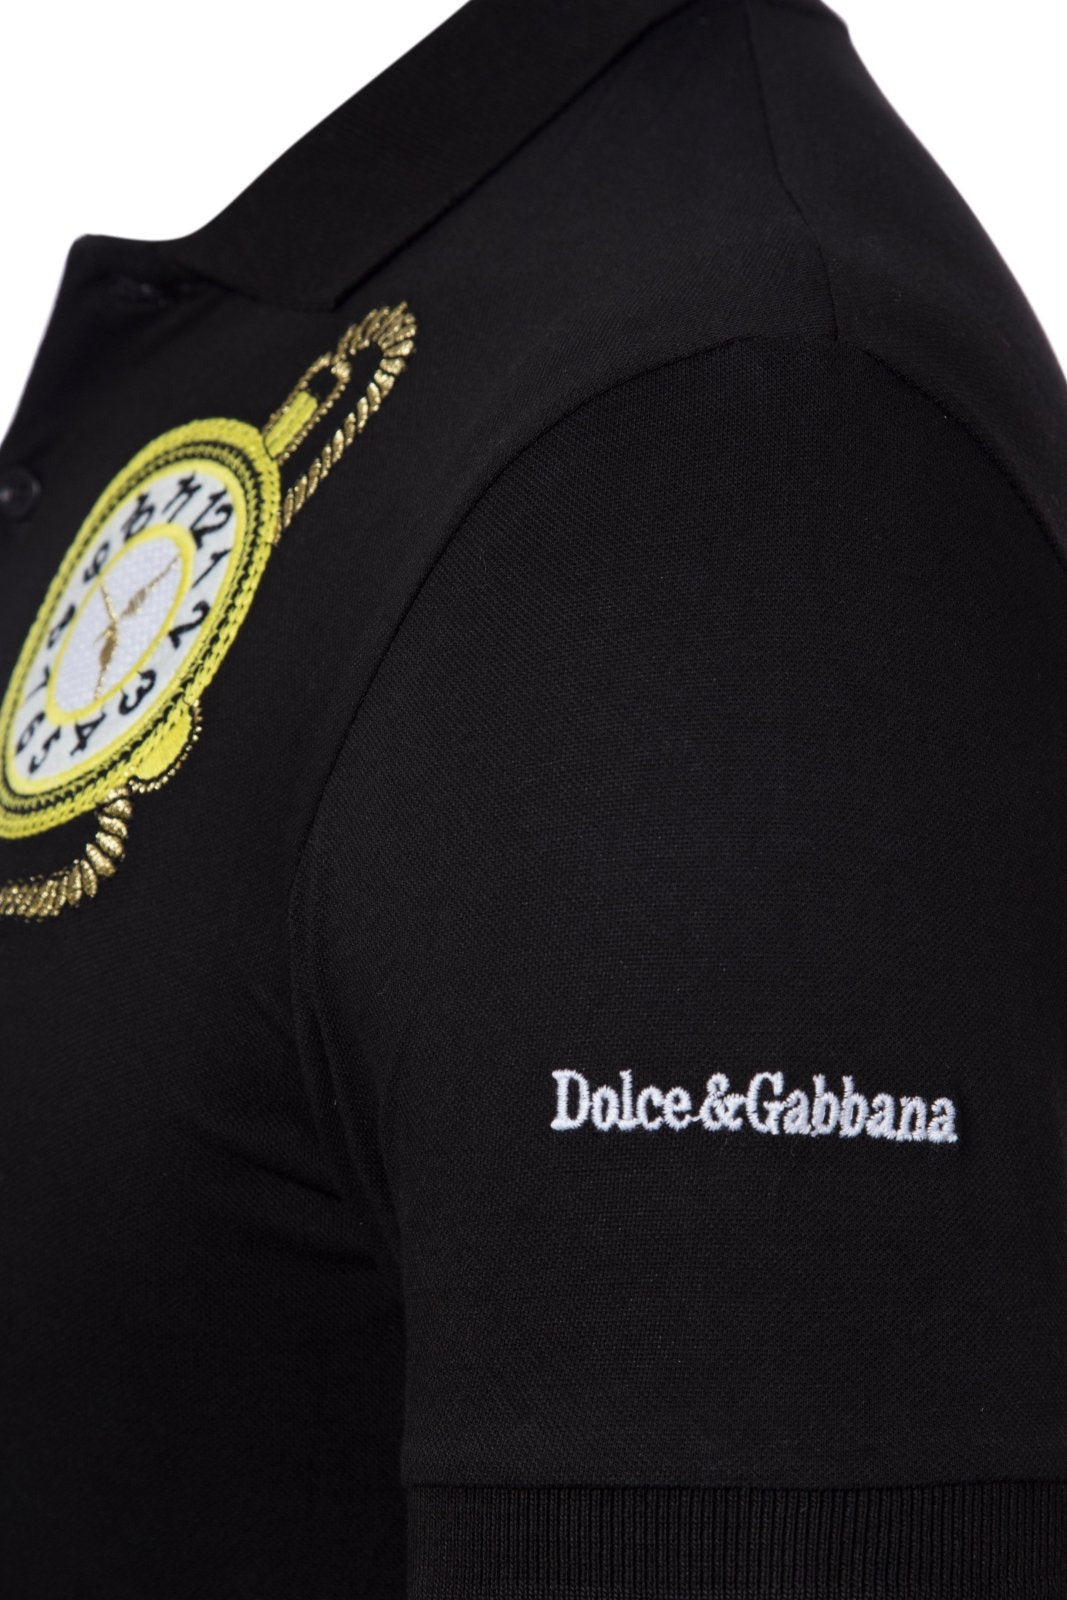 Dolce & Gabbana Polo Shirt - Giltenergy